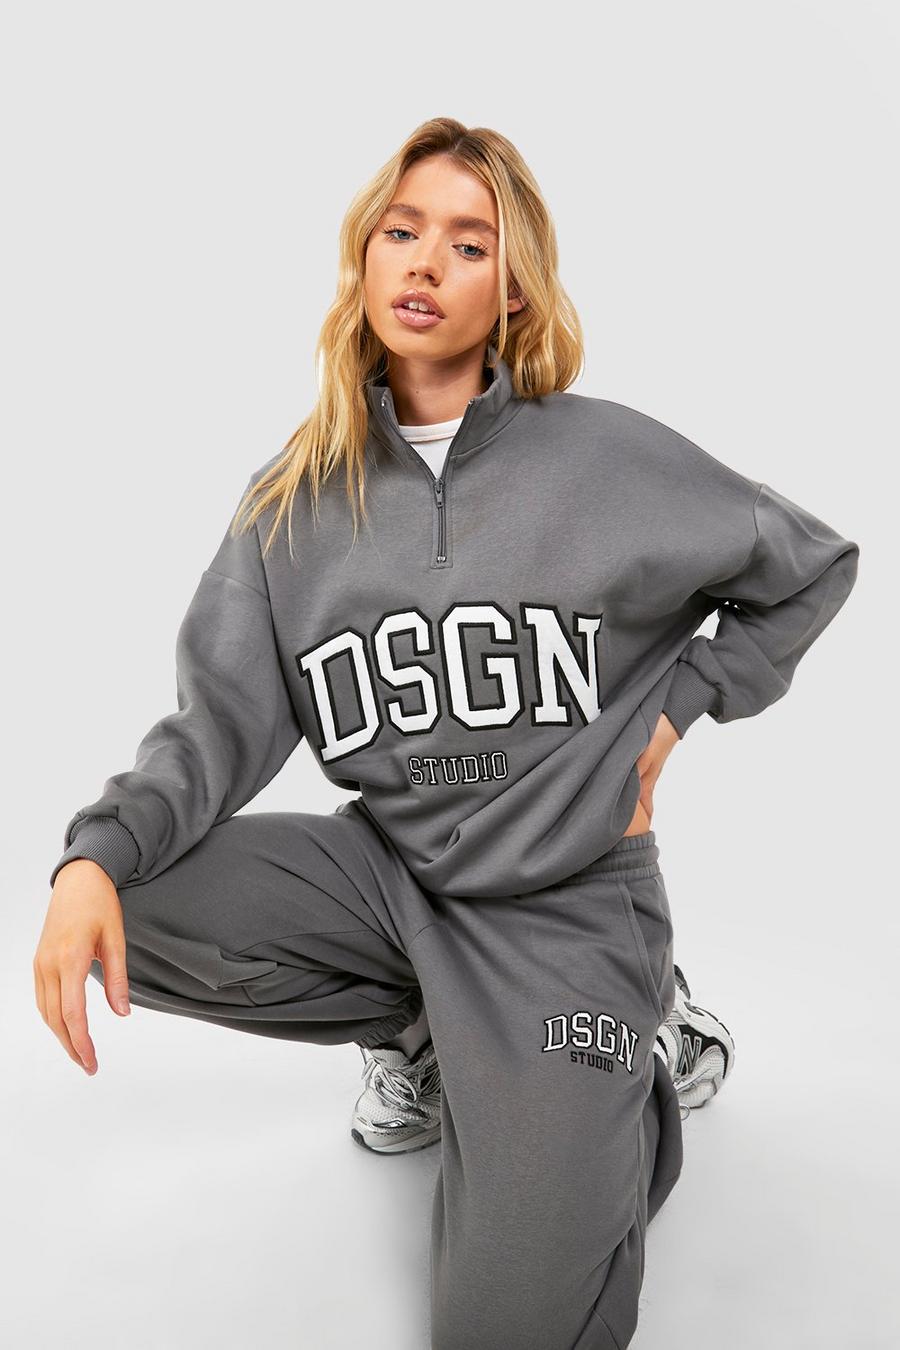 Charcoal grey Dsgn Studio Applique Oversized Half Zip Sweatshirt